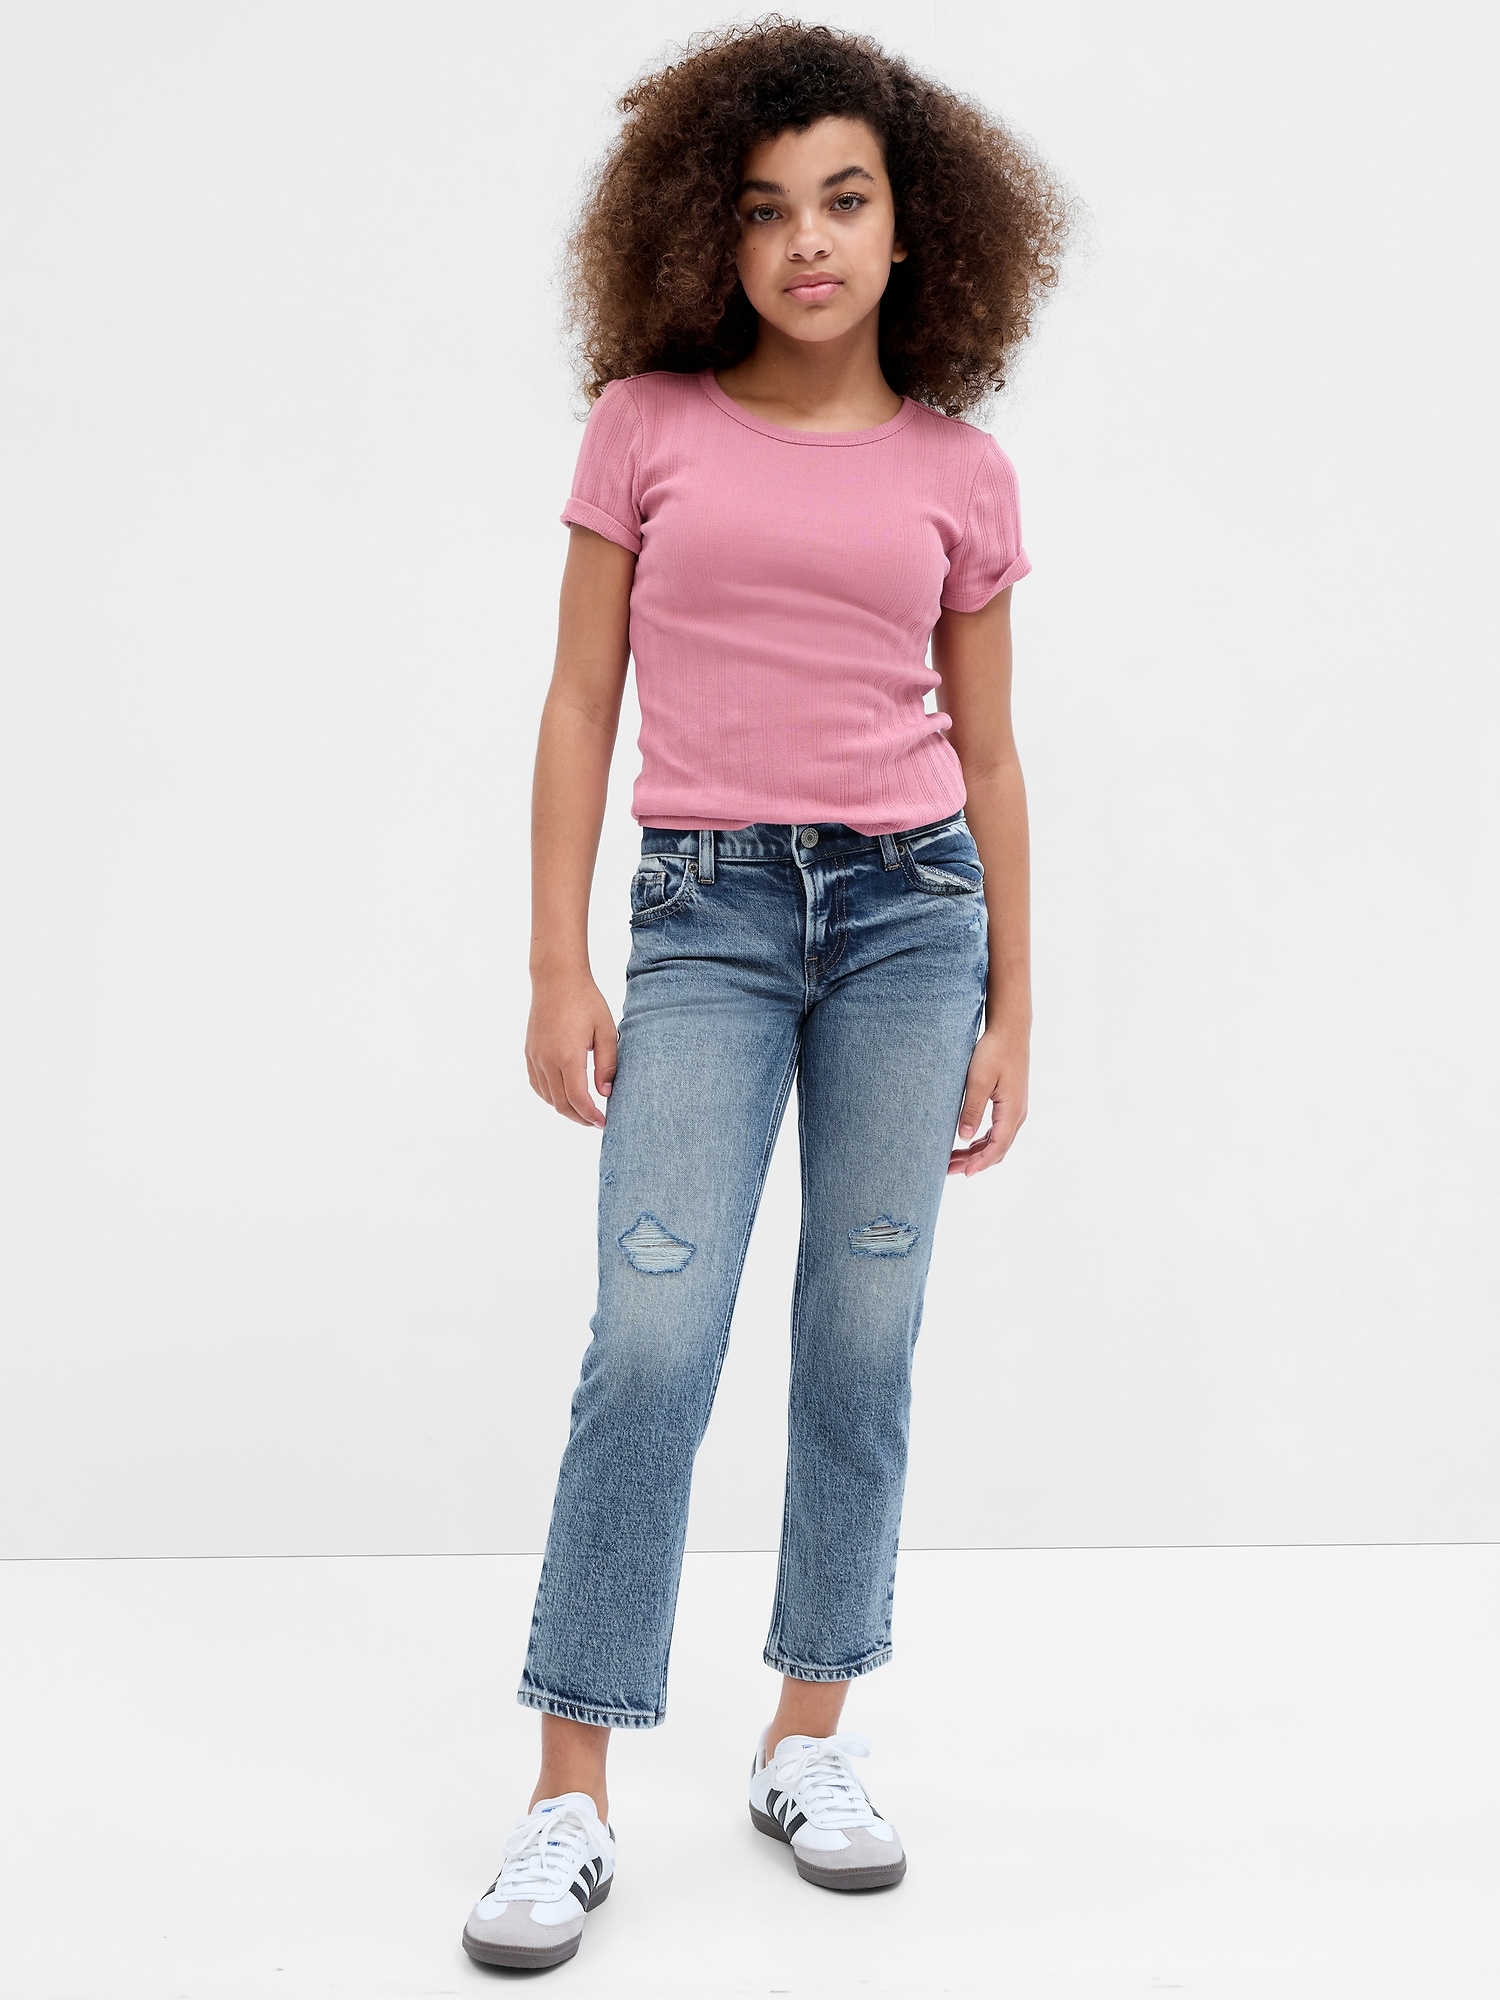 Gap Kids Purple Jeggings - 5 youth – RePlay Kidswear